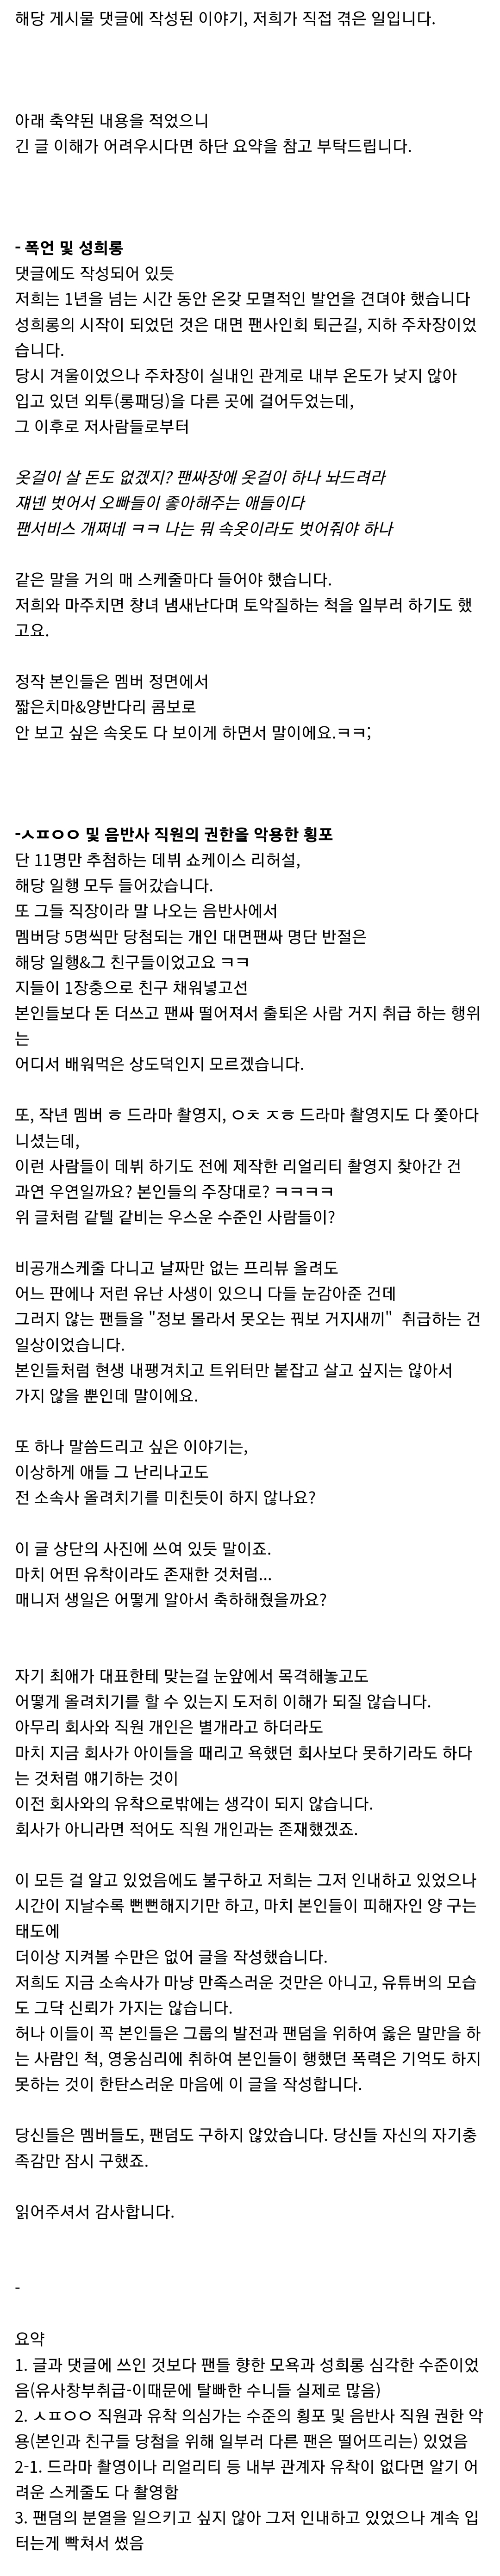 [정보/소식] 어느 아이돌 팬들의 사생+악성무리 폭로글이래 | 인스티즈